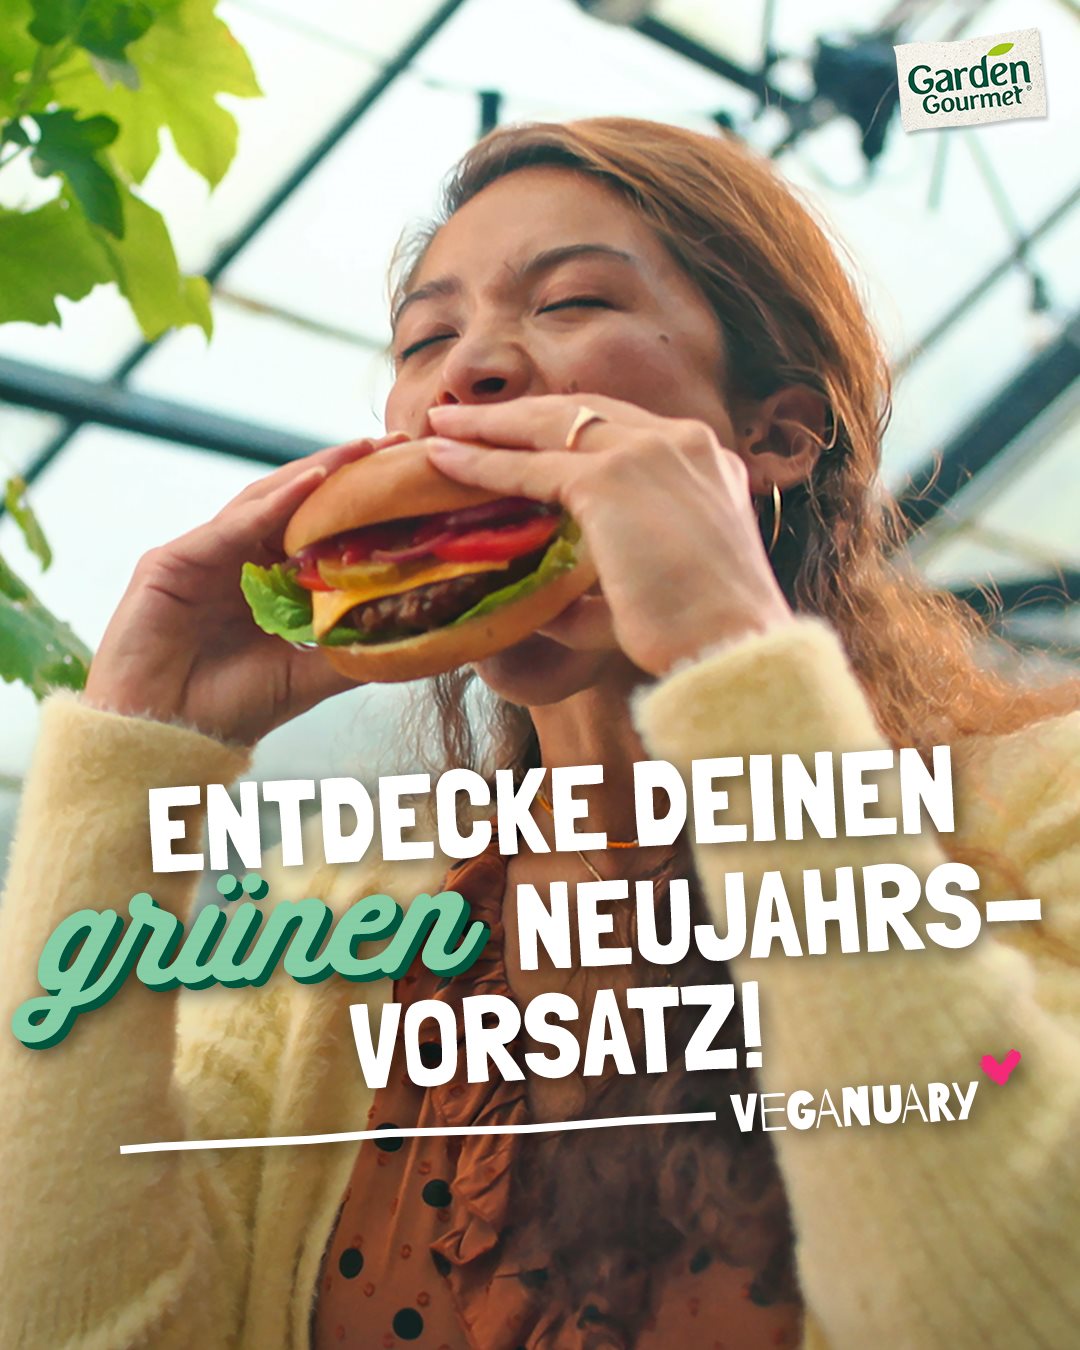 Nestlé ist mit ihren Garden Gourmet Produkten Partner von Veganuary 2022